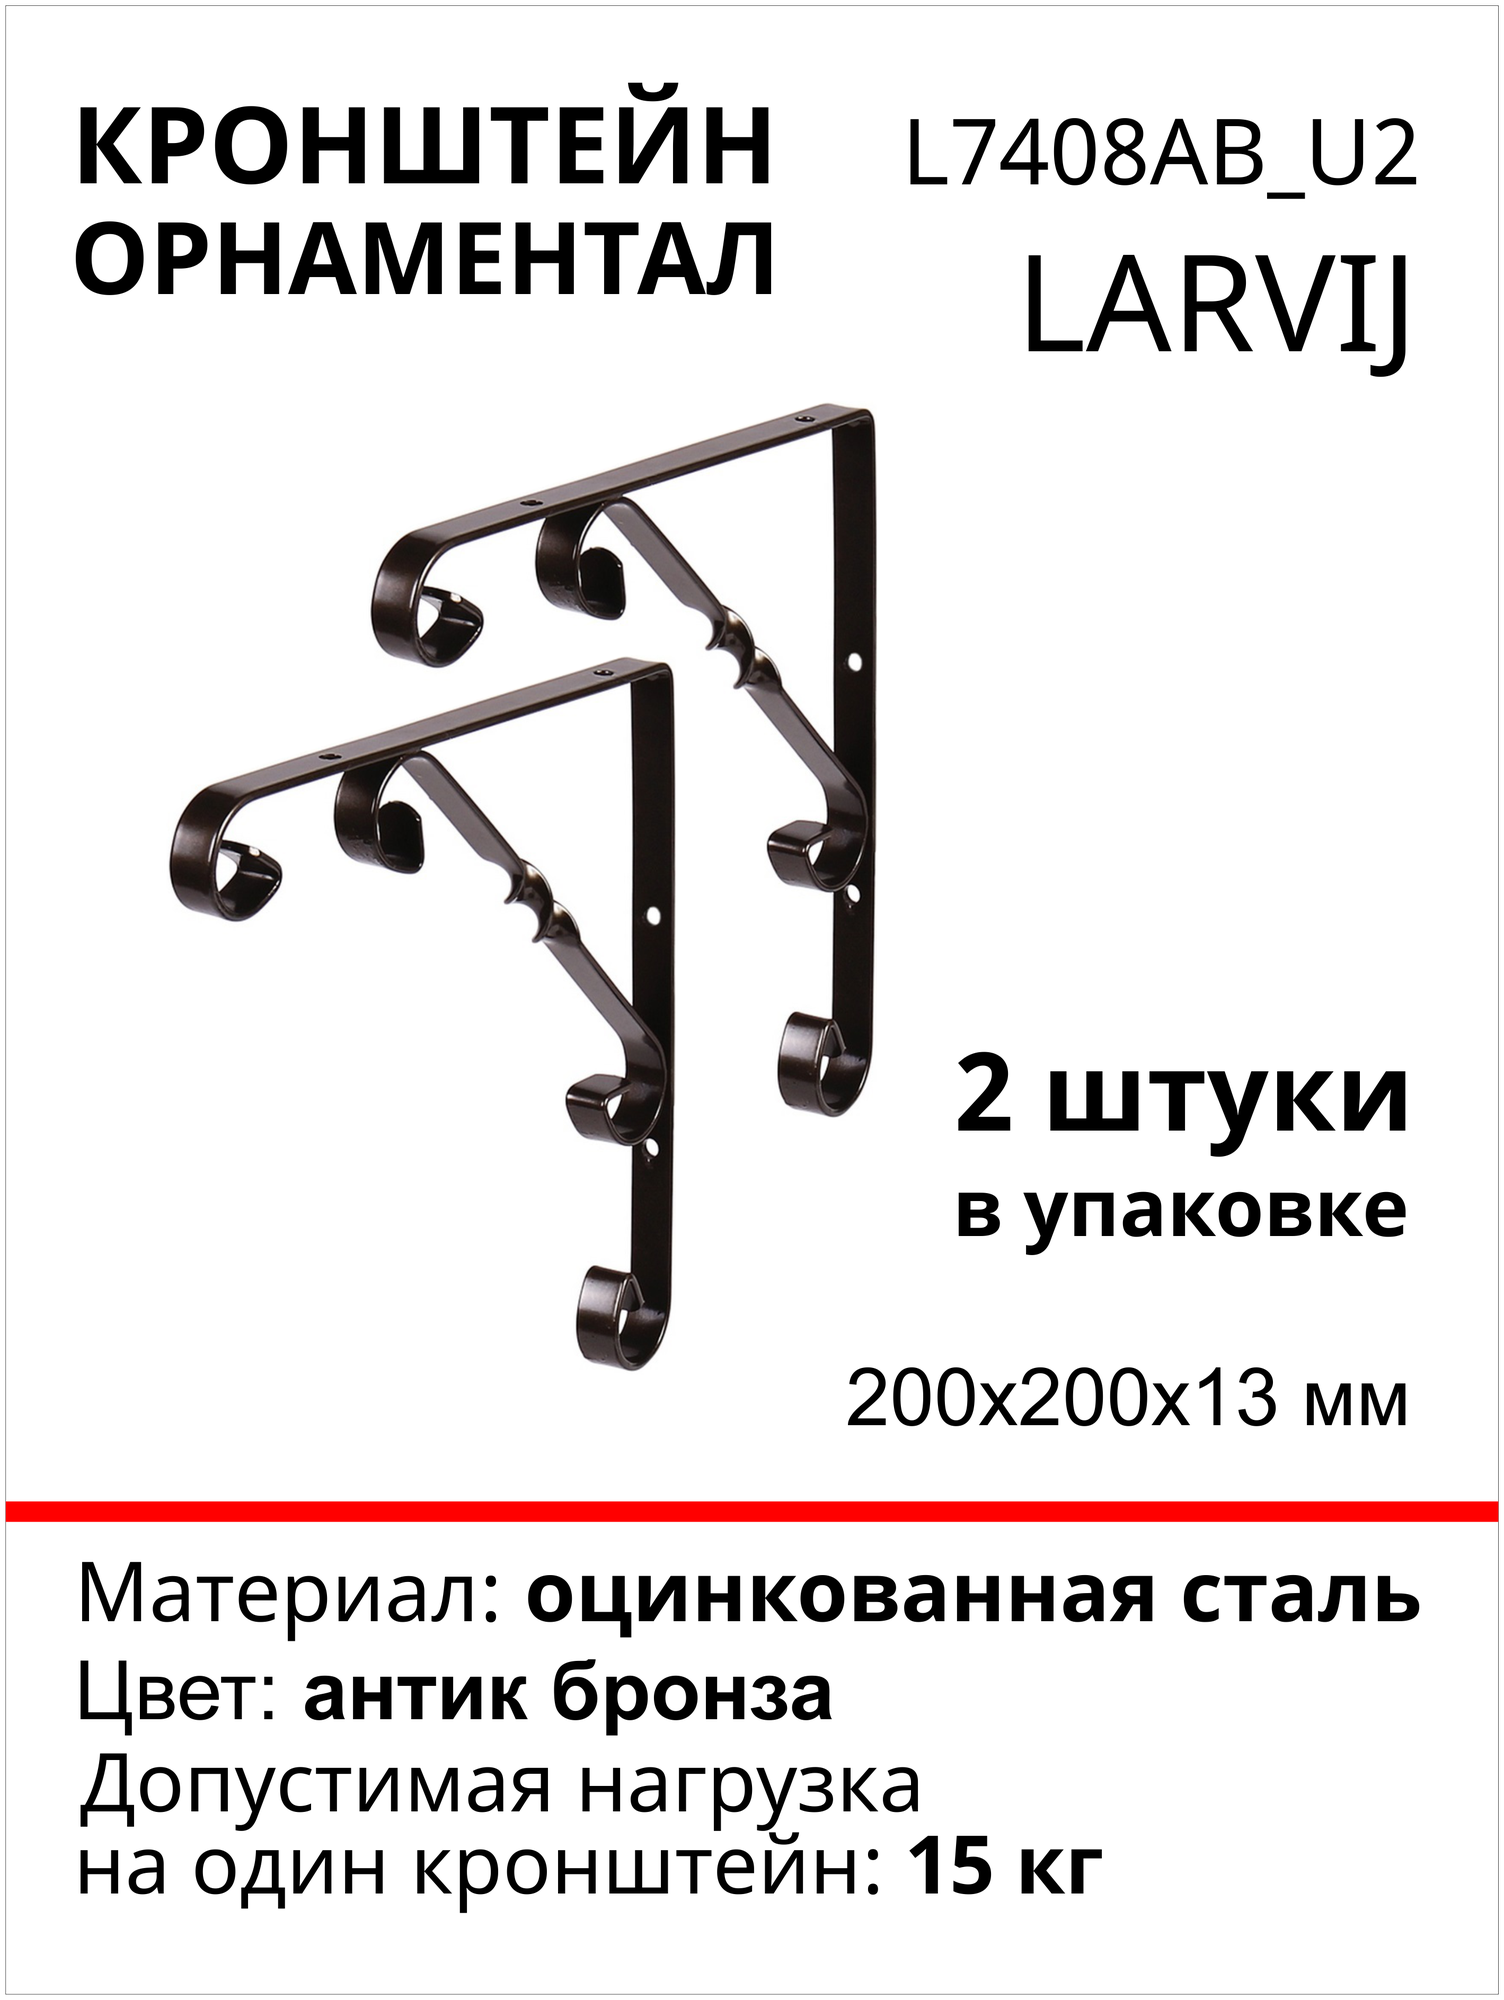 Кронштейн Larvij Орнаментал 200x200х13 мм сталь цвет: антик бронза 15 кг 2 шт L7408AB_U2